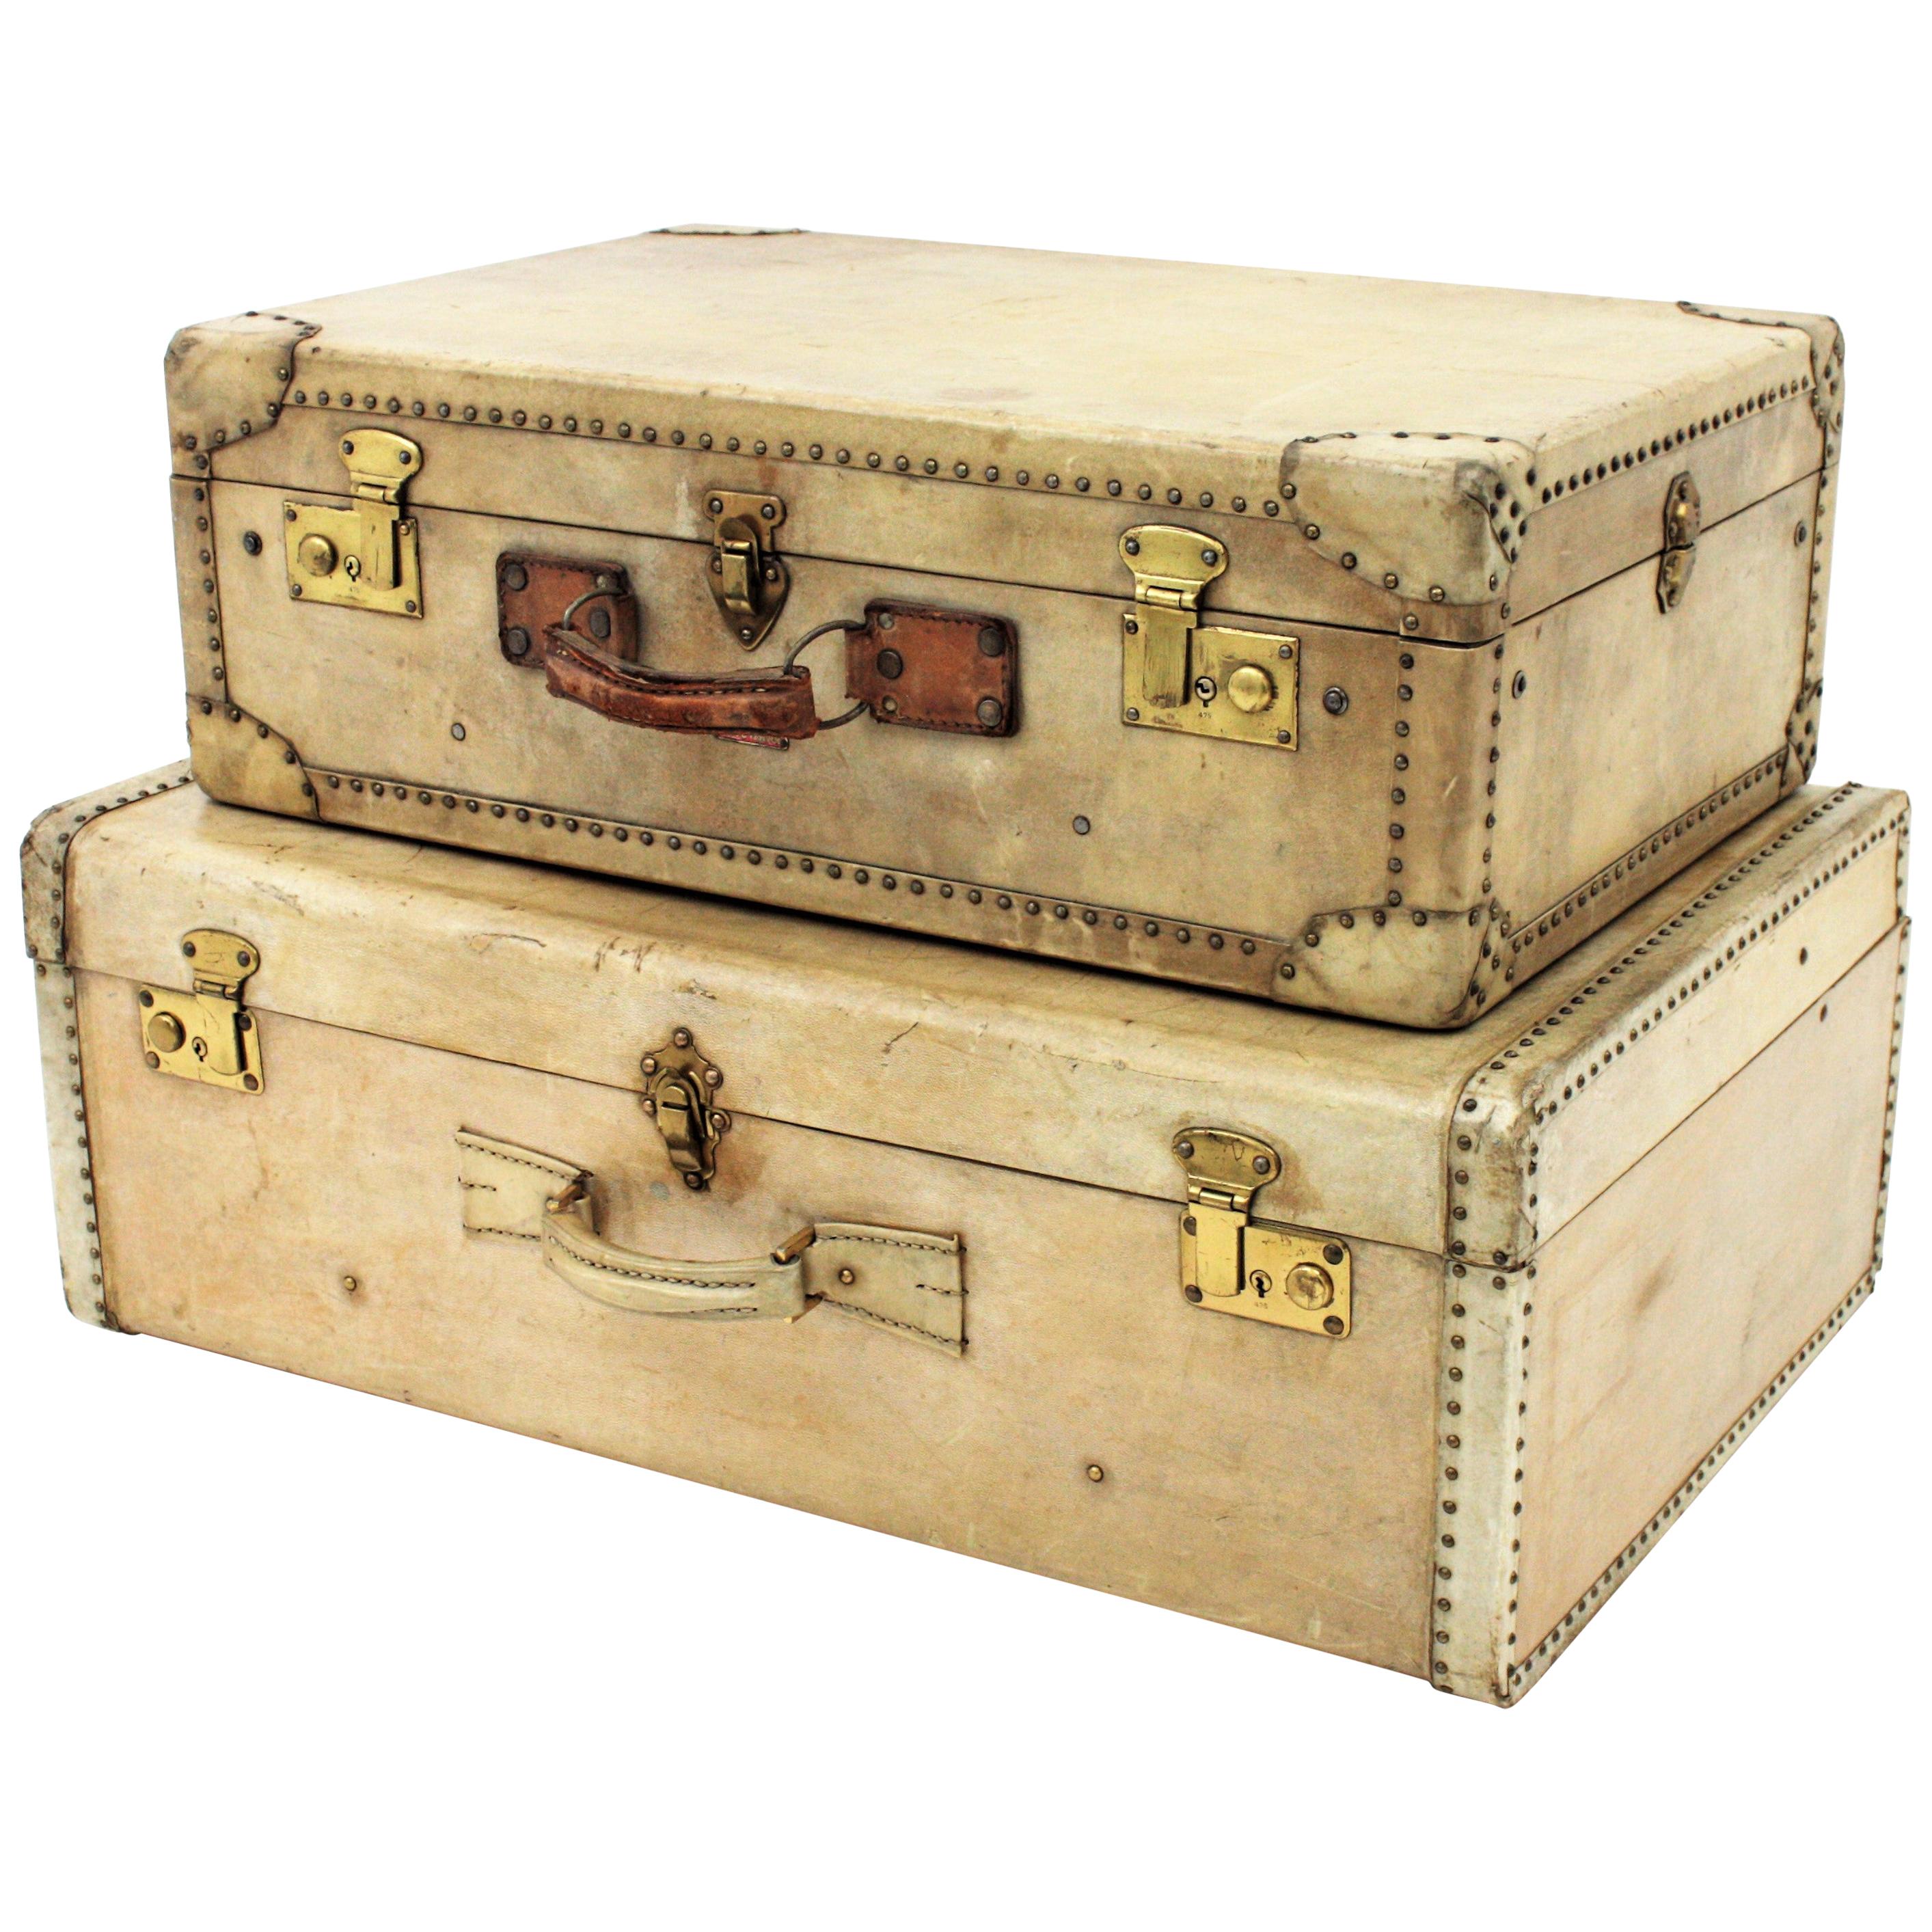 Ein Set aus hochwertigen französischen Luxuskoffern aus Vellum. Frankreich, 1920-1930er Jahre.
Hergestellt aus Holz und Pergament mit Messingnieten und Schlossplatten aus Messing und Ledergriffen.
Der oben abgebildete wurde von Innovation